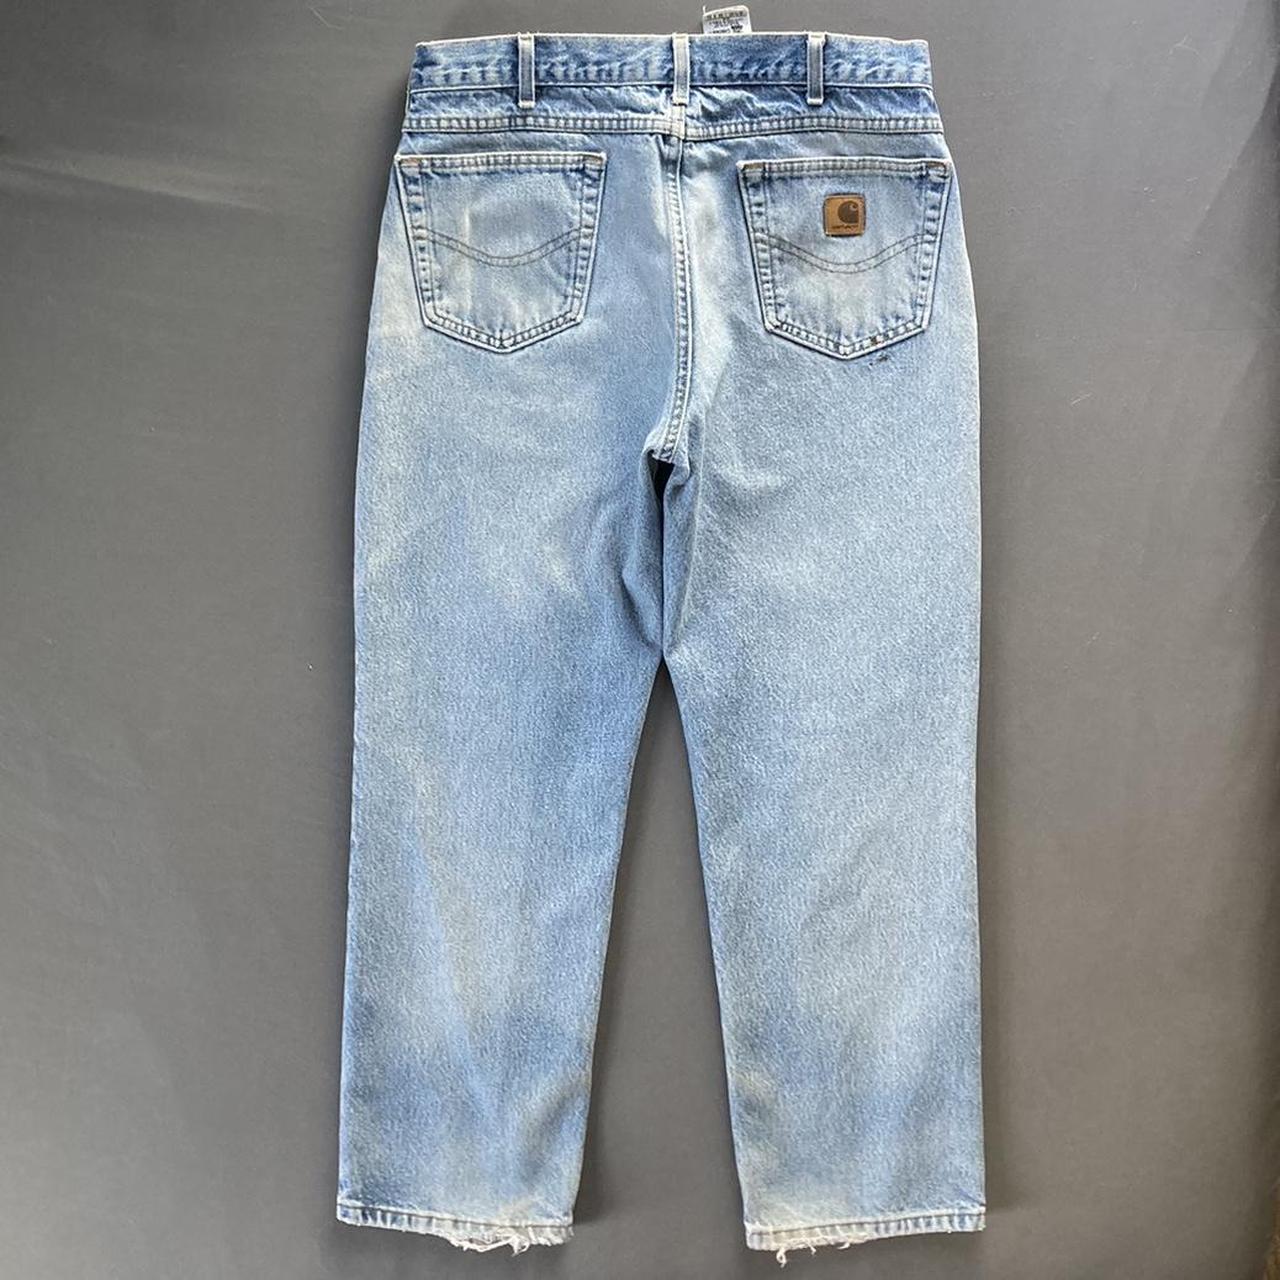 Carhartt jeans Sz 36/30 Good condition Good wear... - Depop